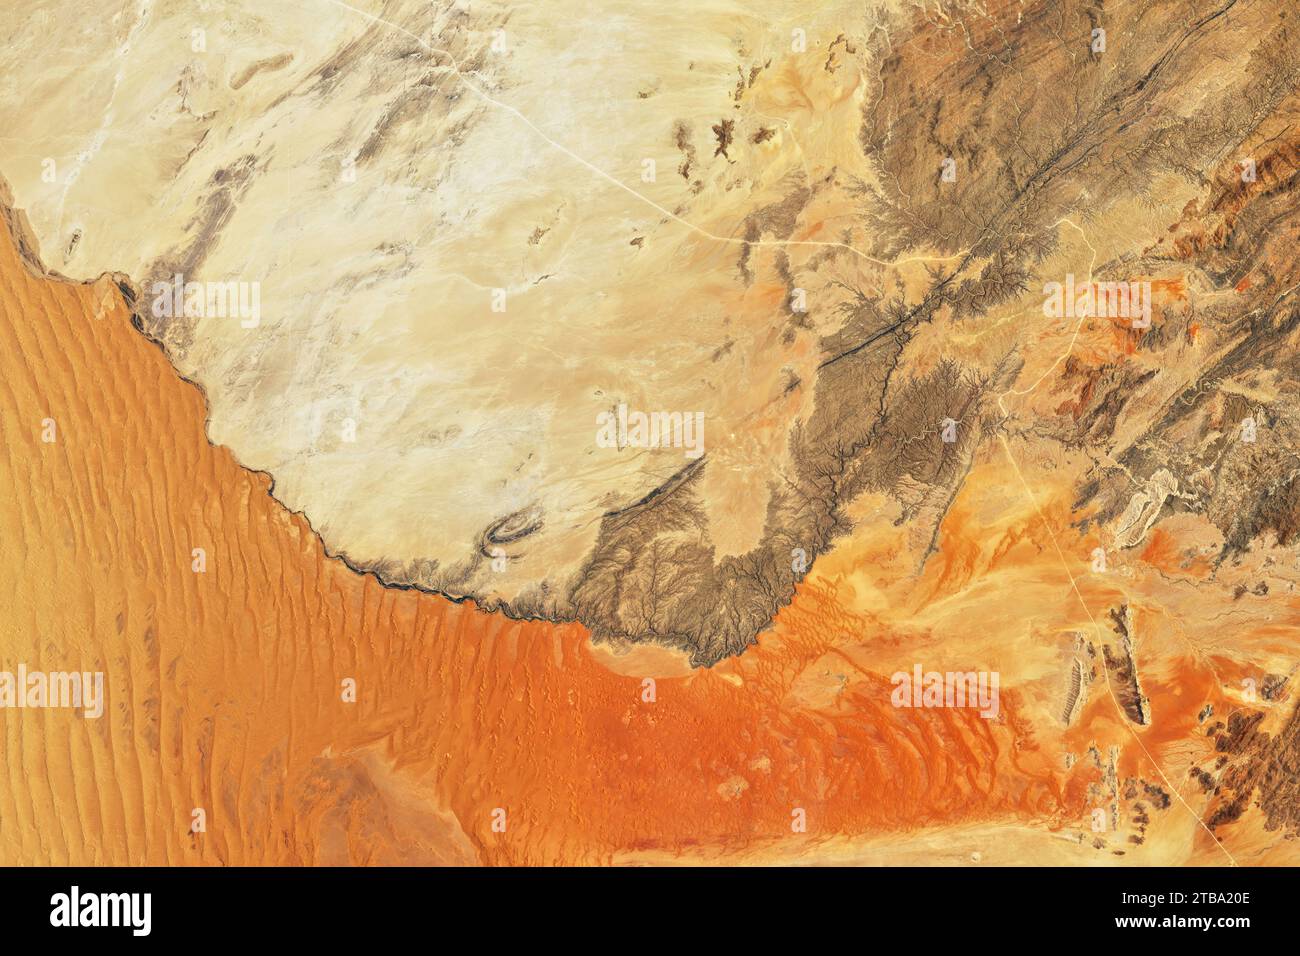 Satellitenansicht der Dünen und Landformen des Sandmeers der Namib-Wüste Afrikas. Stockfoto